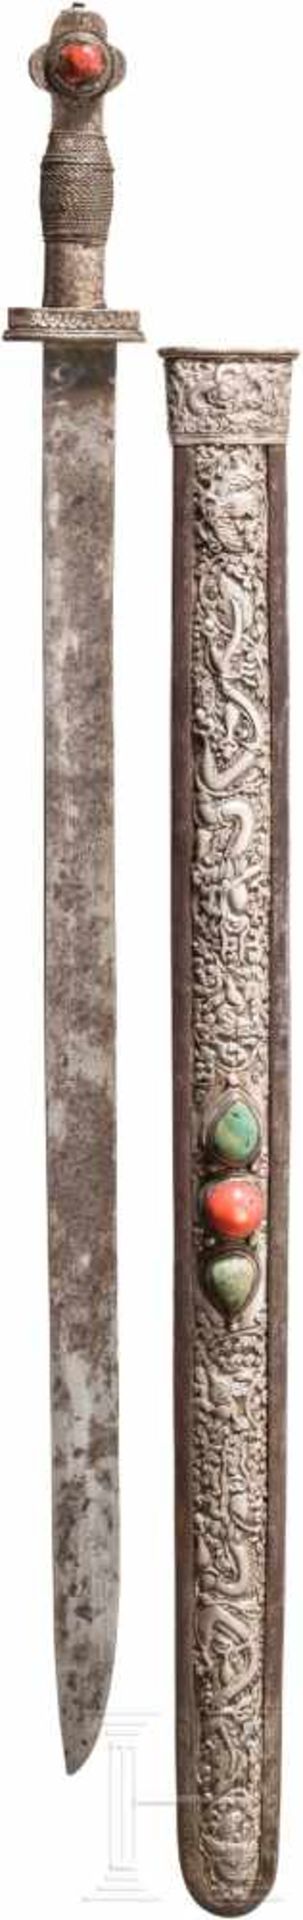 Silbermontiertes, korallen- und türkisbesetztes Schwert, Tibet, 18./19. Jhdt.Lange, etwas fleckige